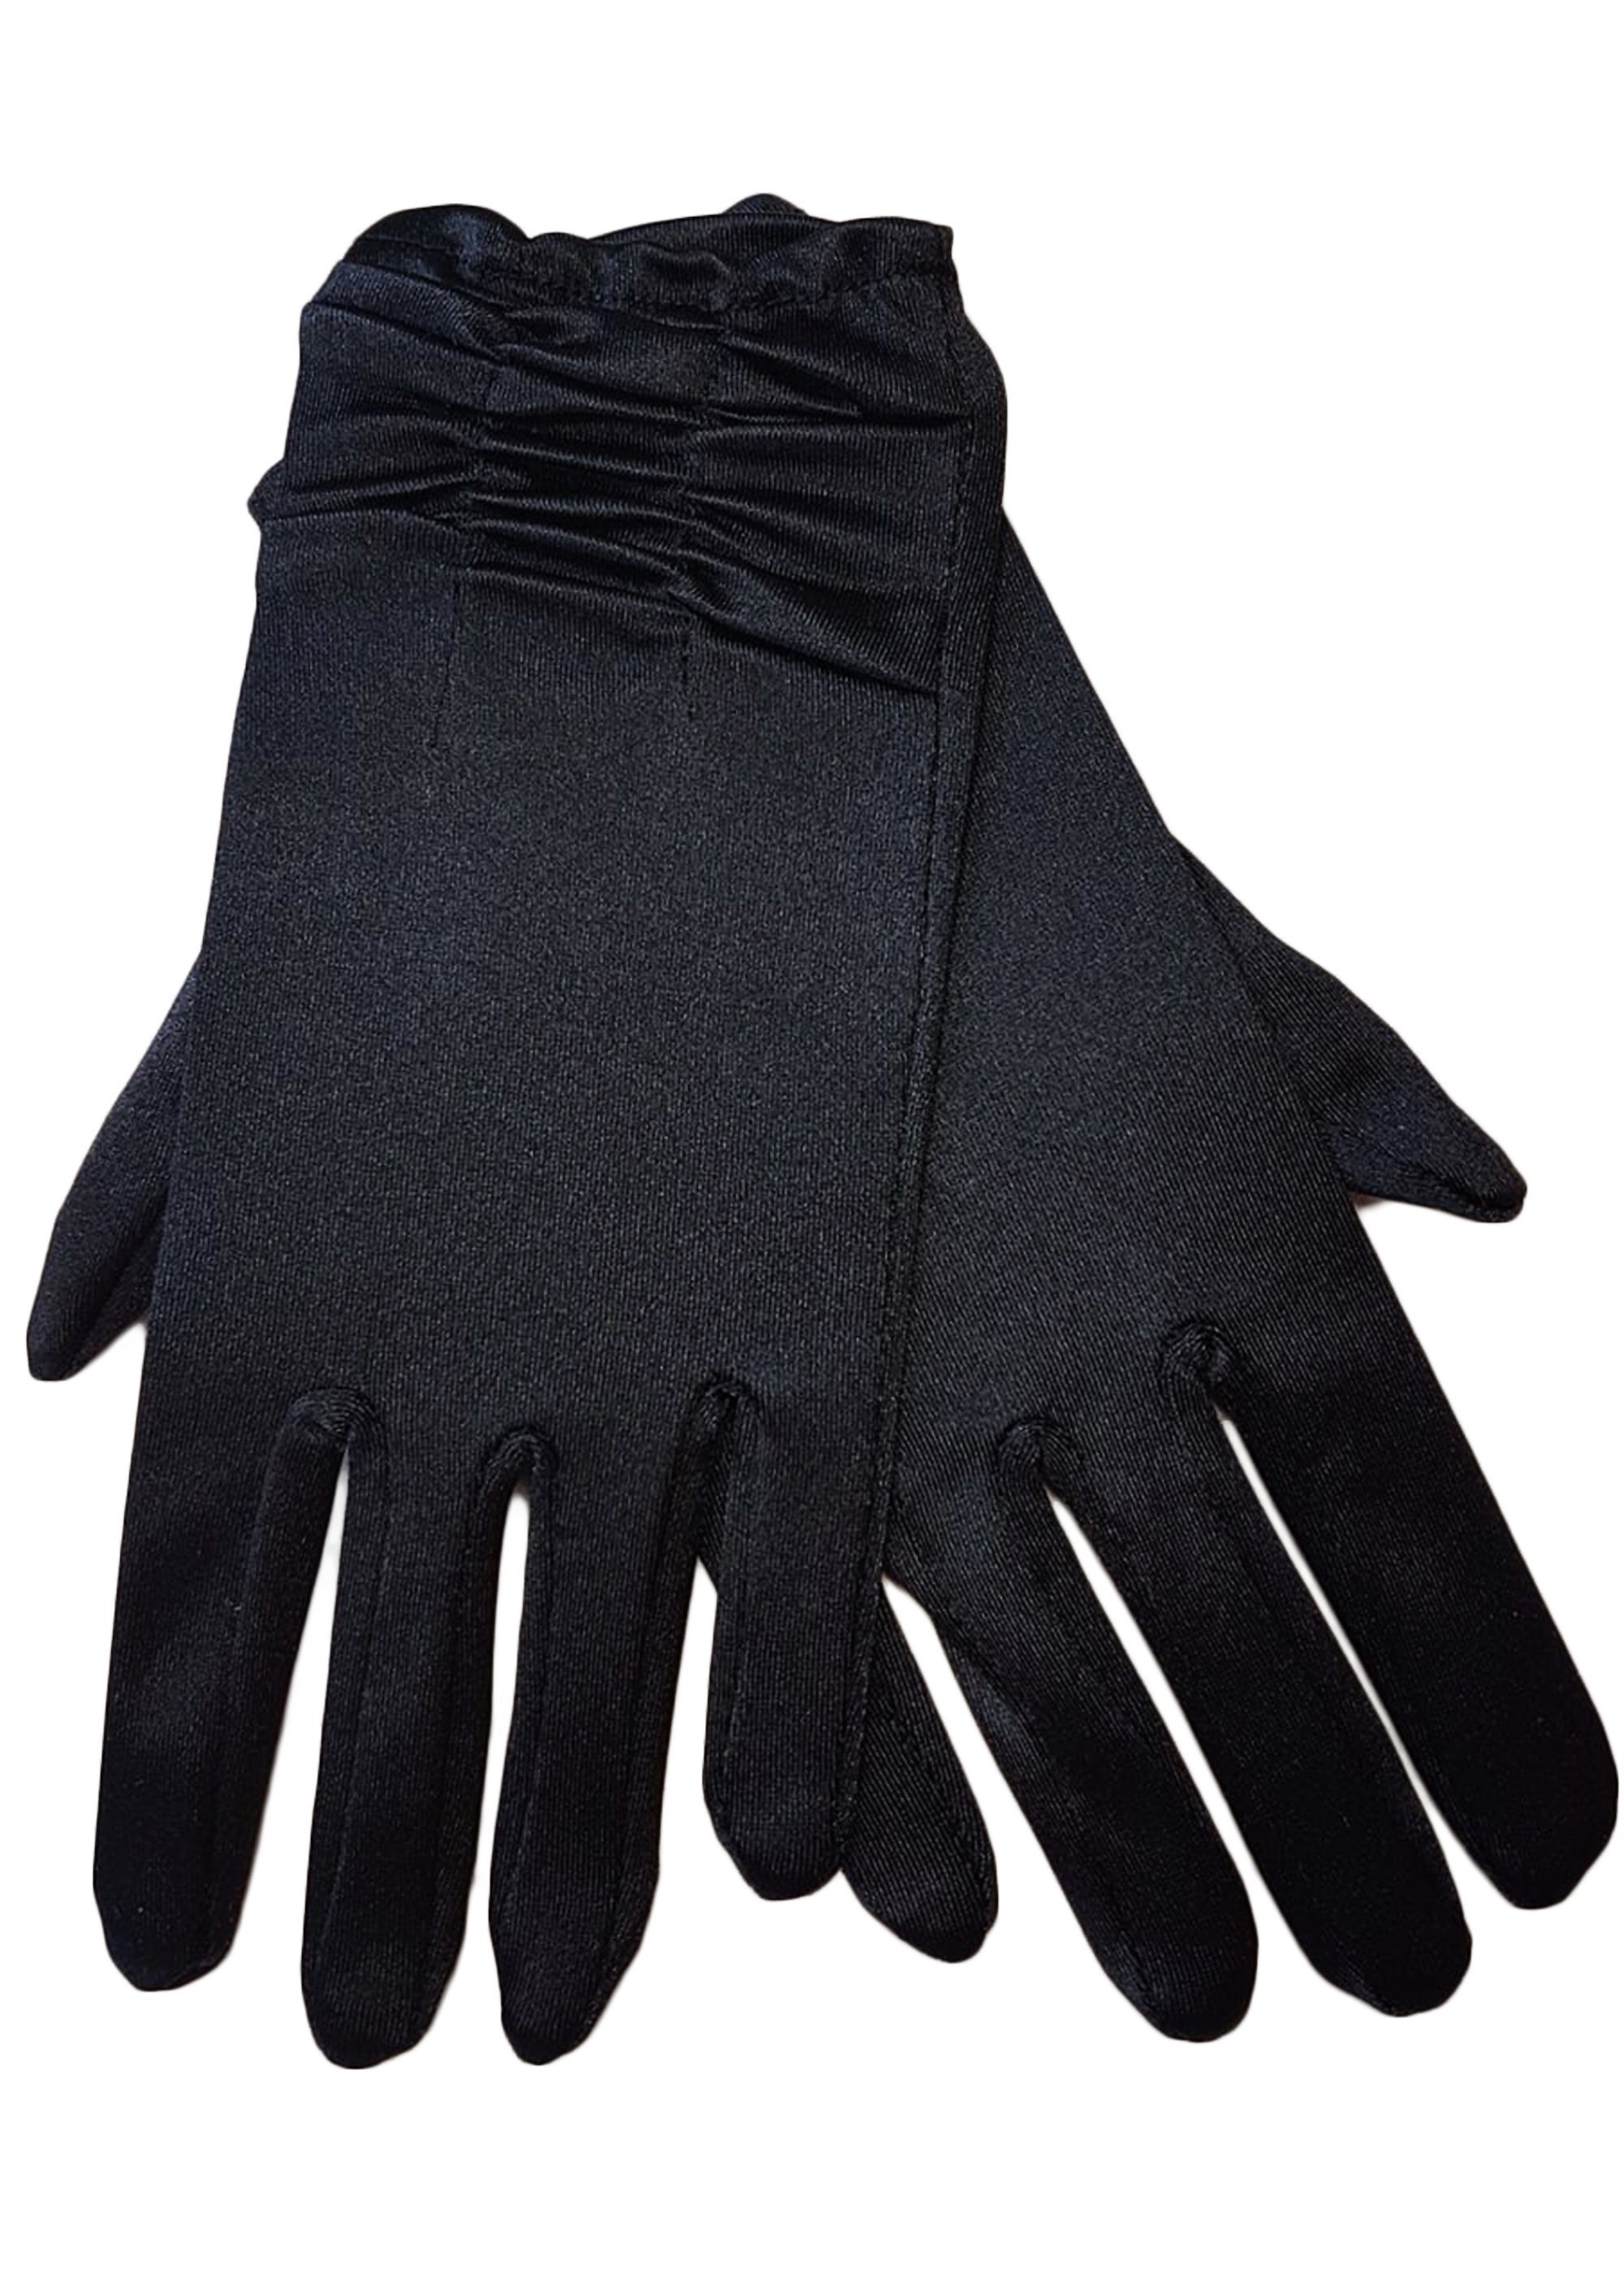 Family Trends Abendhandschuhe Satin-Look Handschuhe im kurz Damen dehnbar schwarz Raffung Satin mit